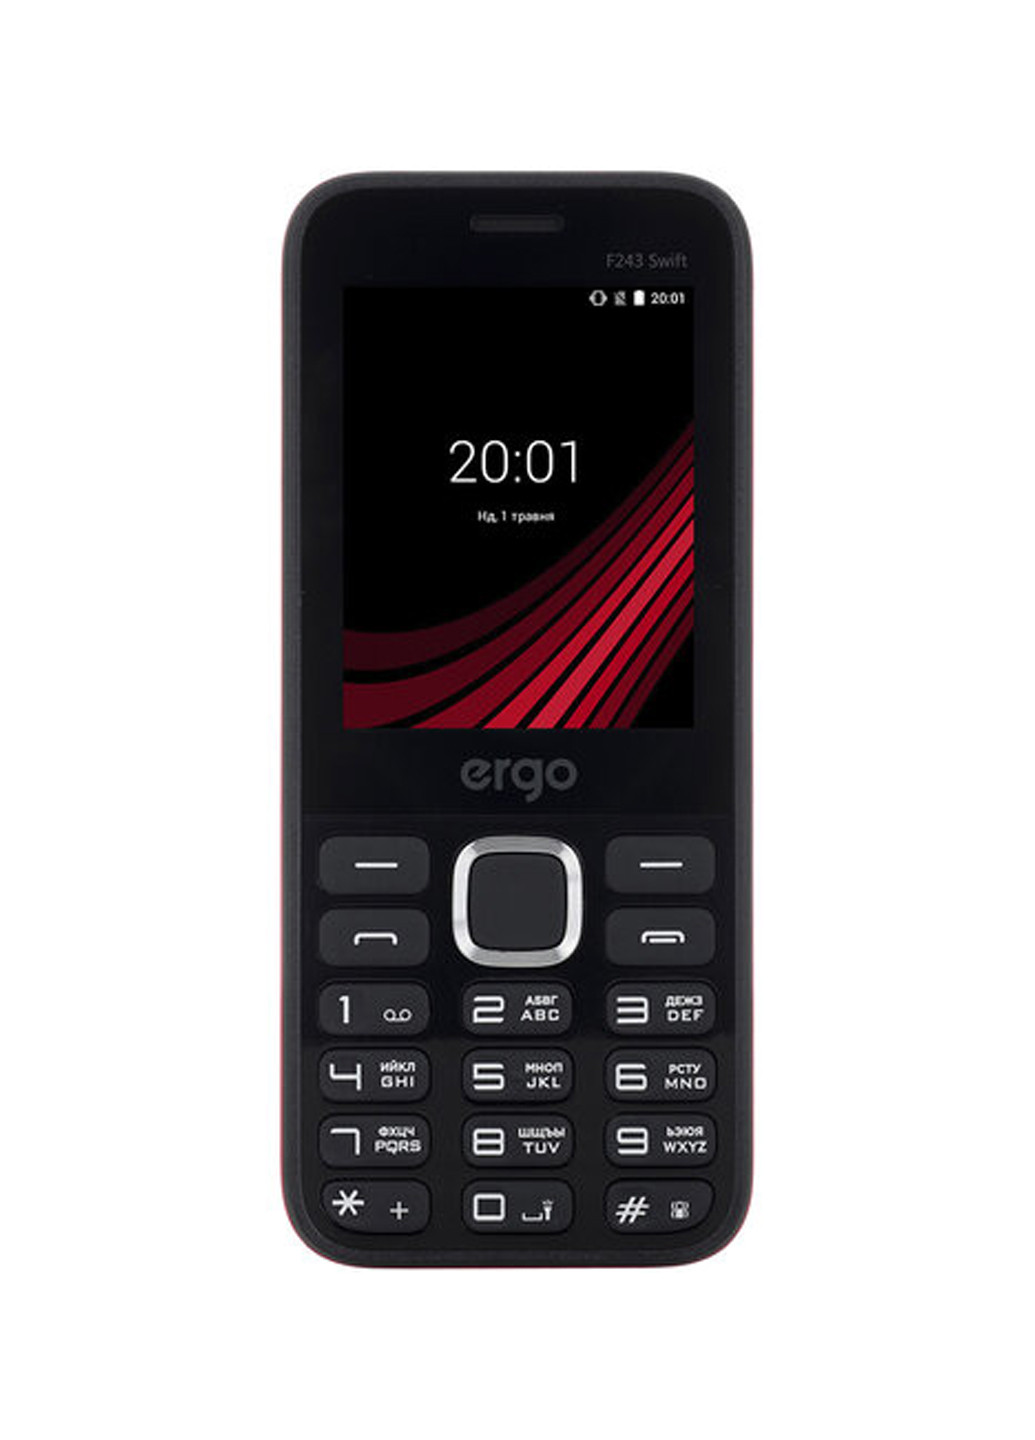 Мобильный телефон Ergo f243 swift black (132999685)